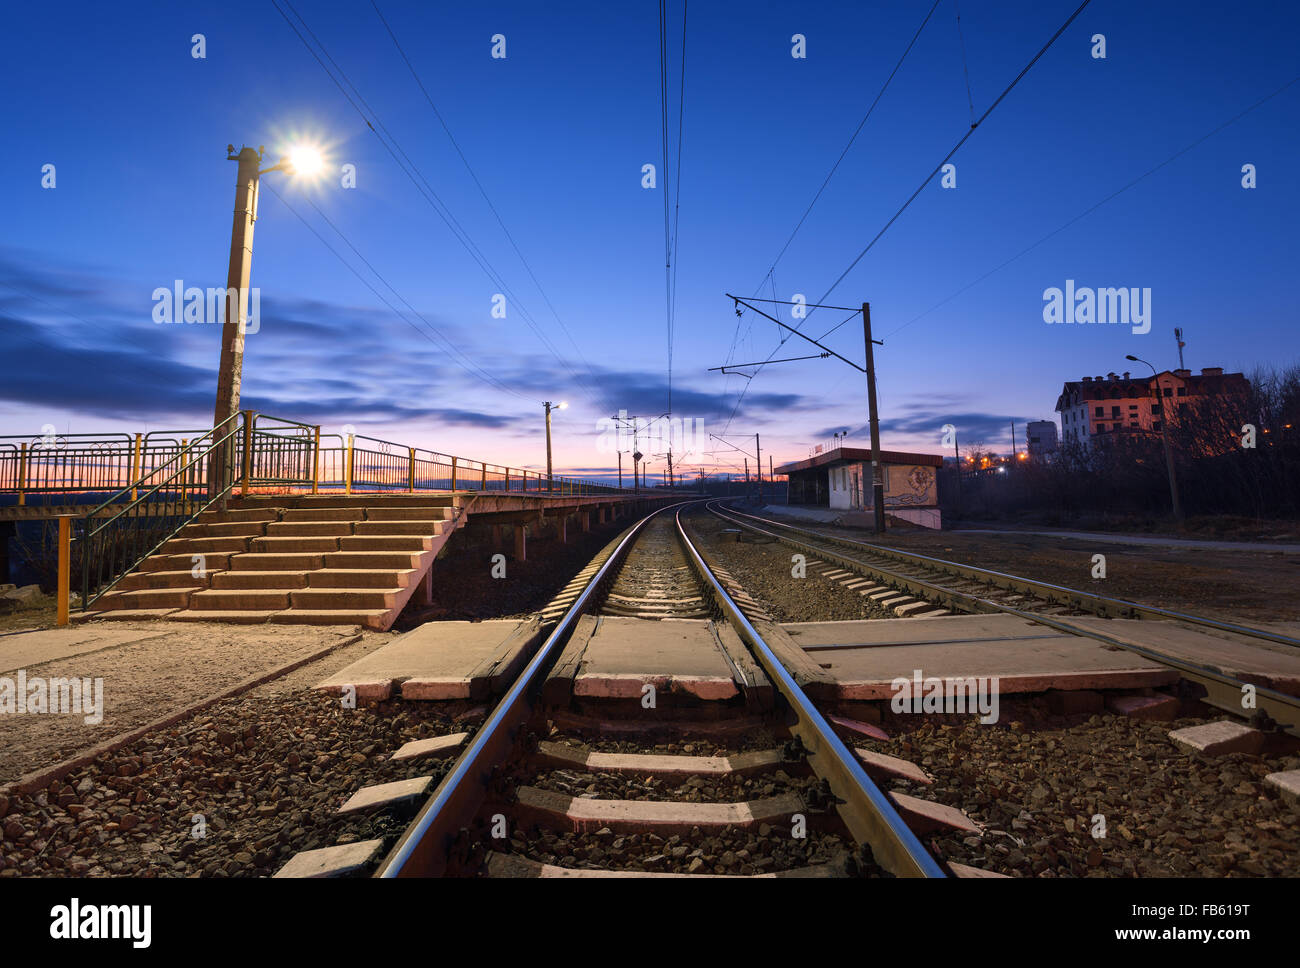 Bahnhof in der Nacht. Eisenbahn in der Ukraine. Stockfoto